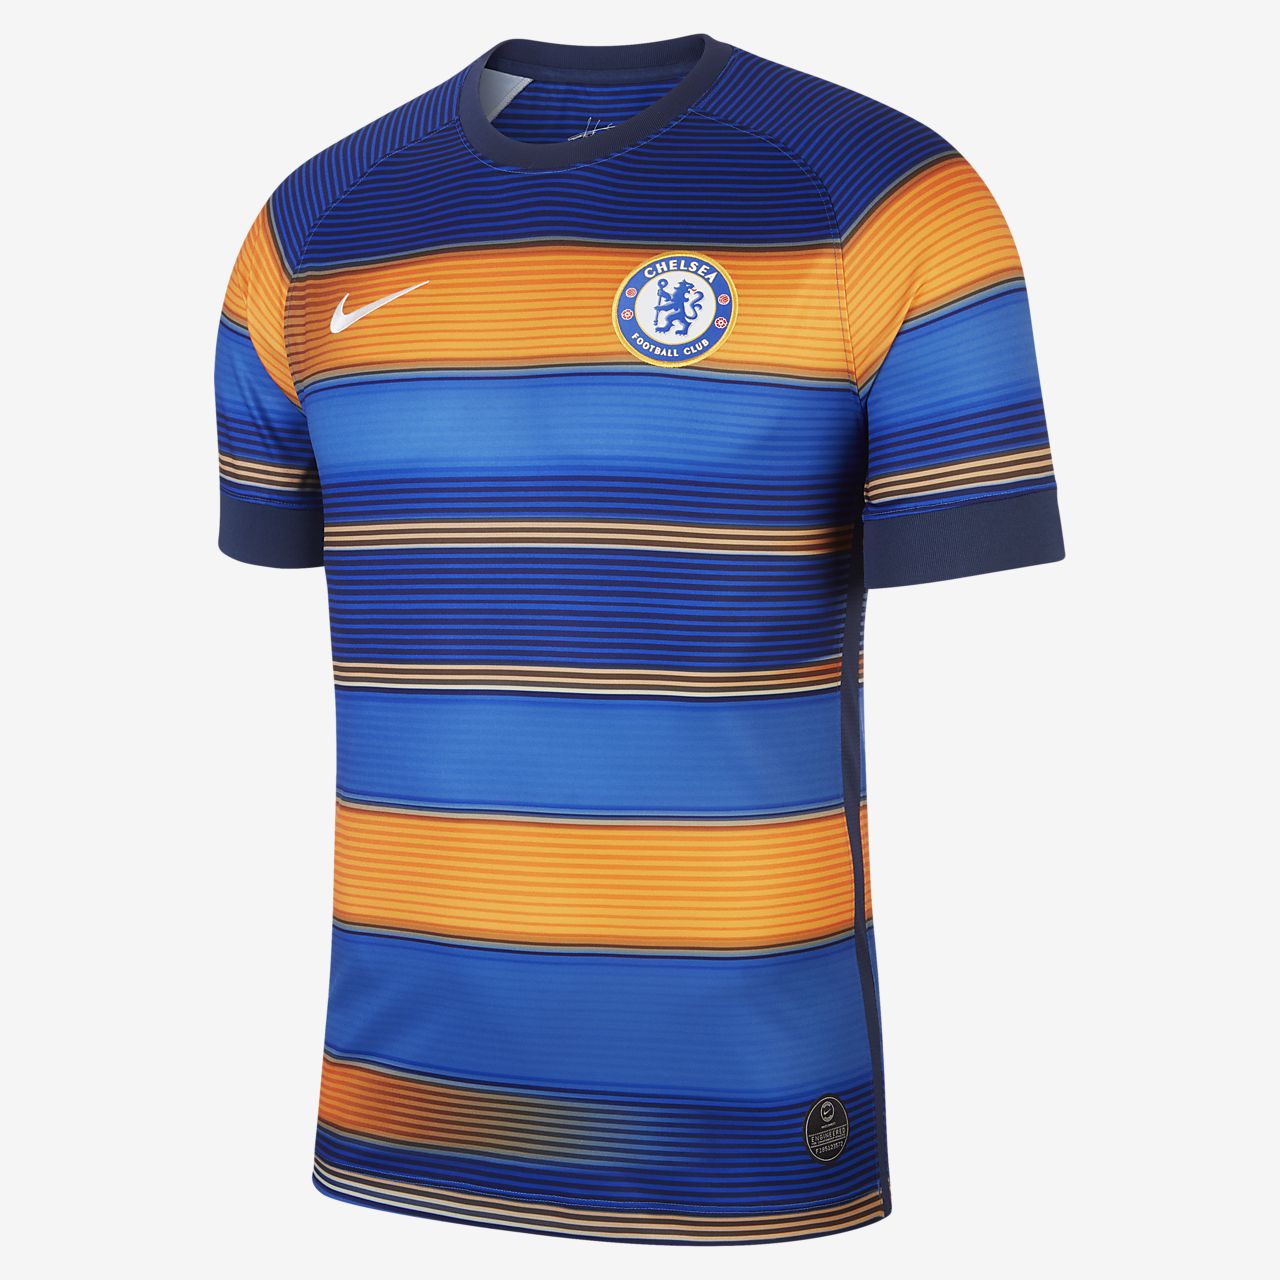 Chelsea 2019 Nike Shirtholders Edition 